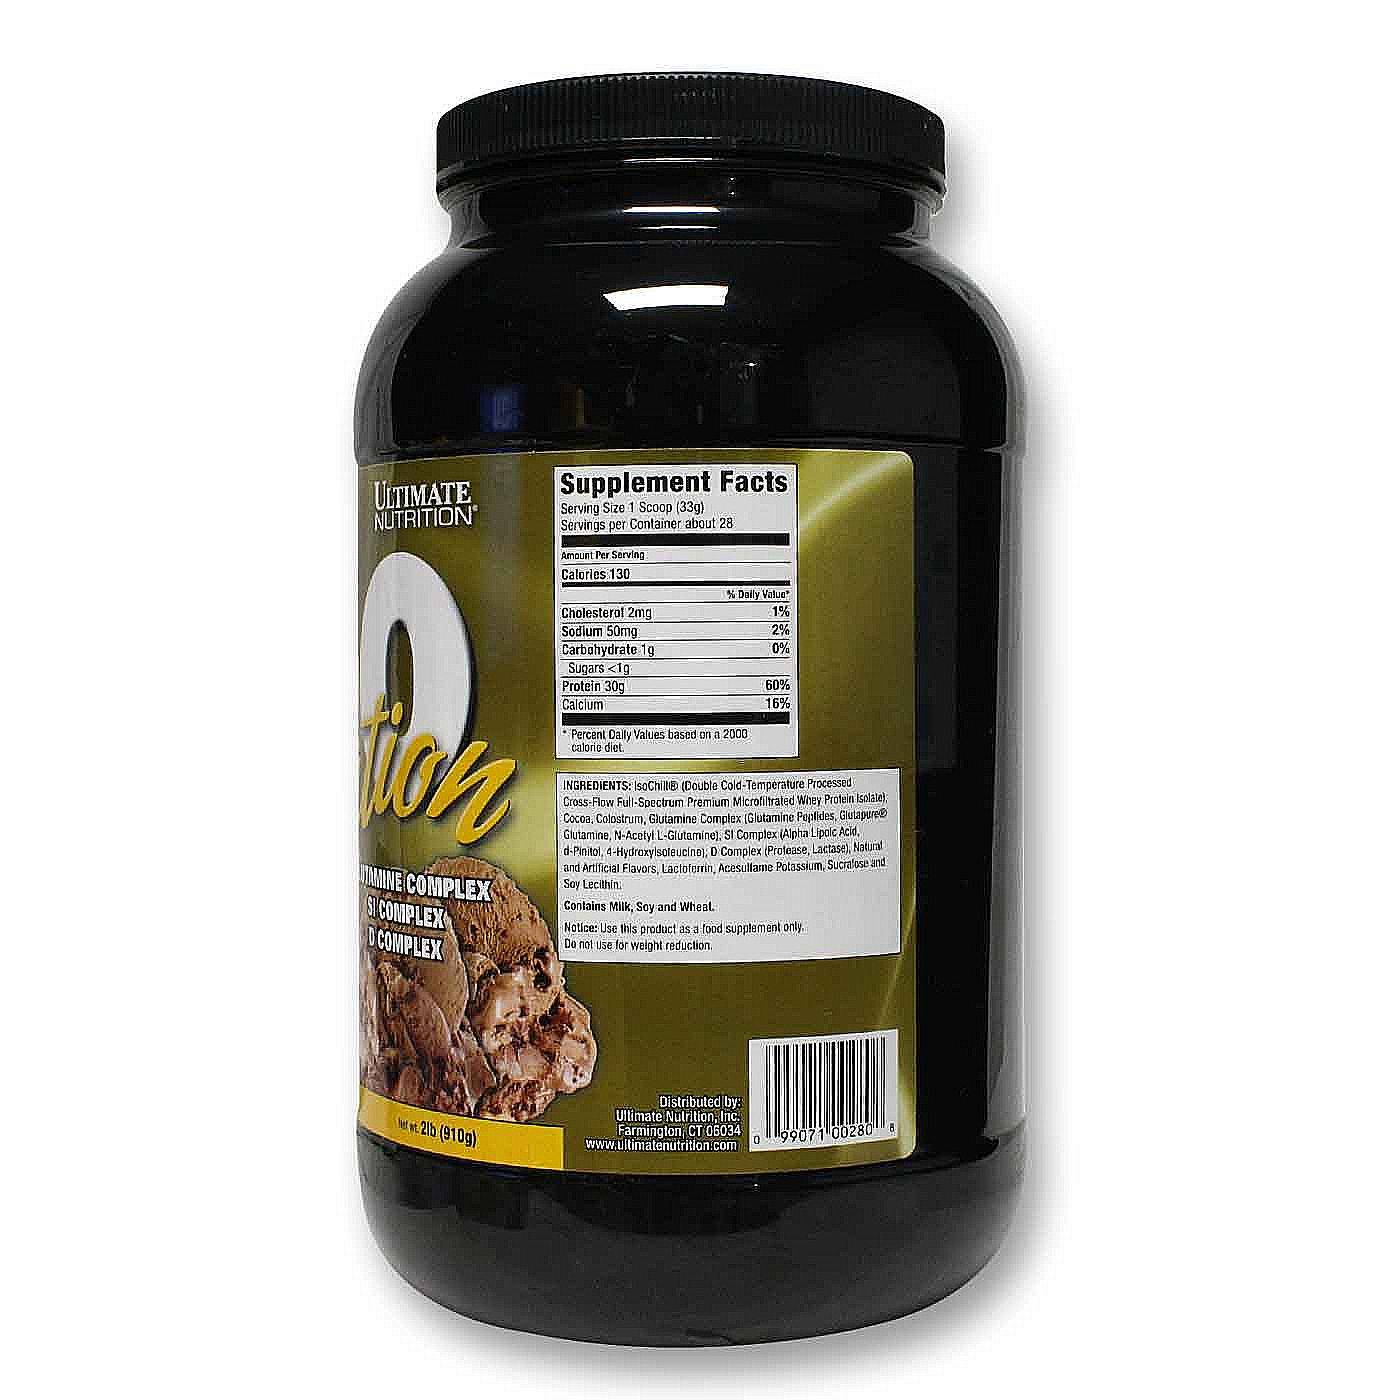 Изолят сывороточного белка Iso Sensation 93, выпускаемый известным производителем спортивного питания Ultimate Nutrition, представляет собой изолят сывороточного протеина